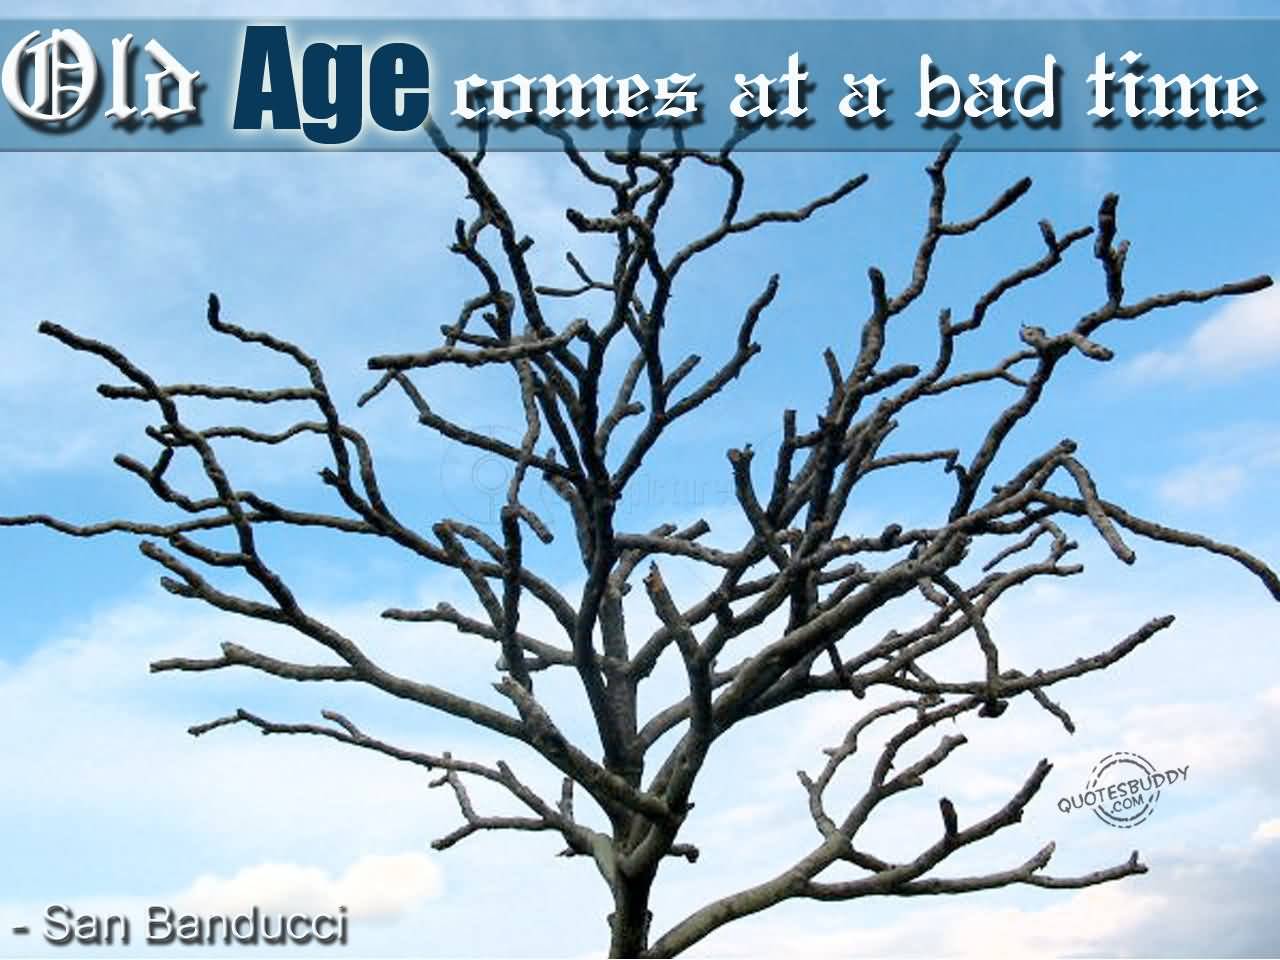 Old Age Comes at a Bad Time. San Banducci